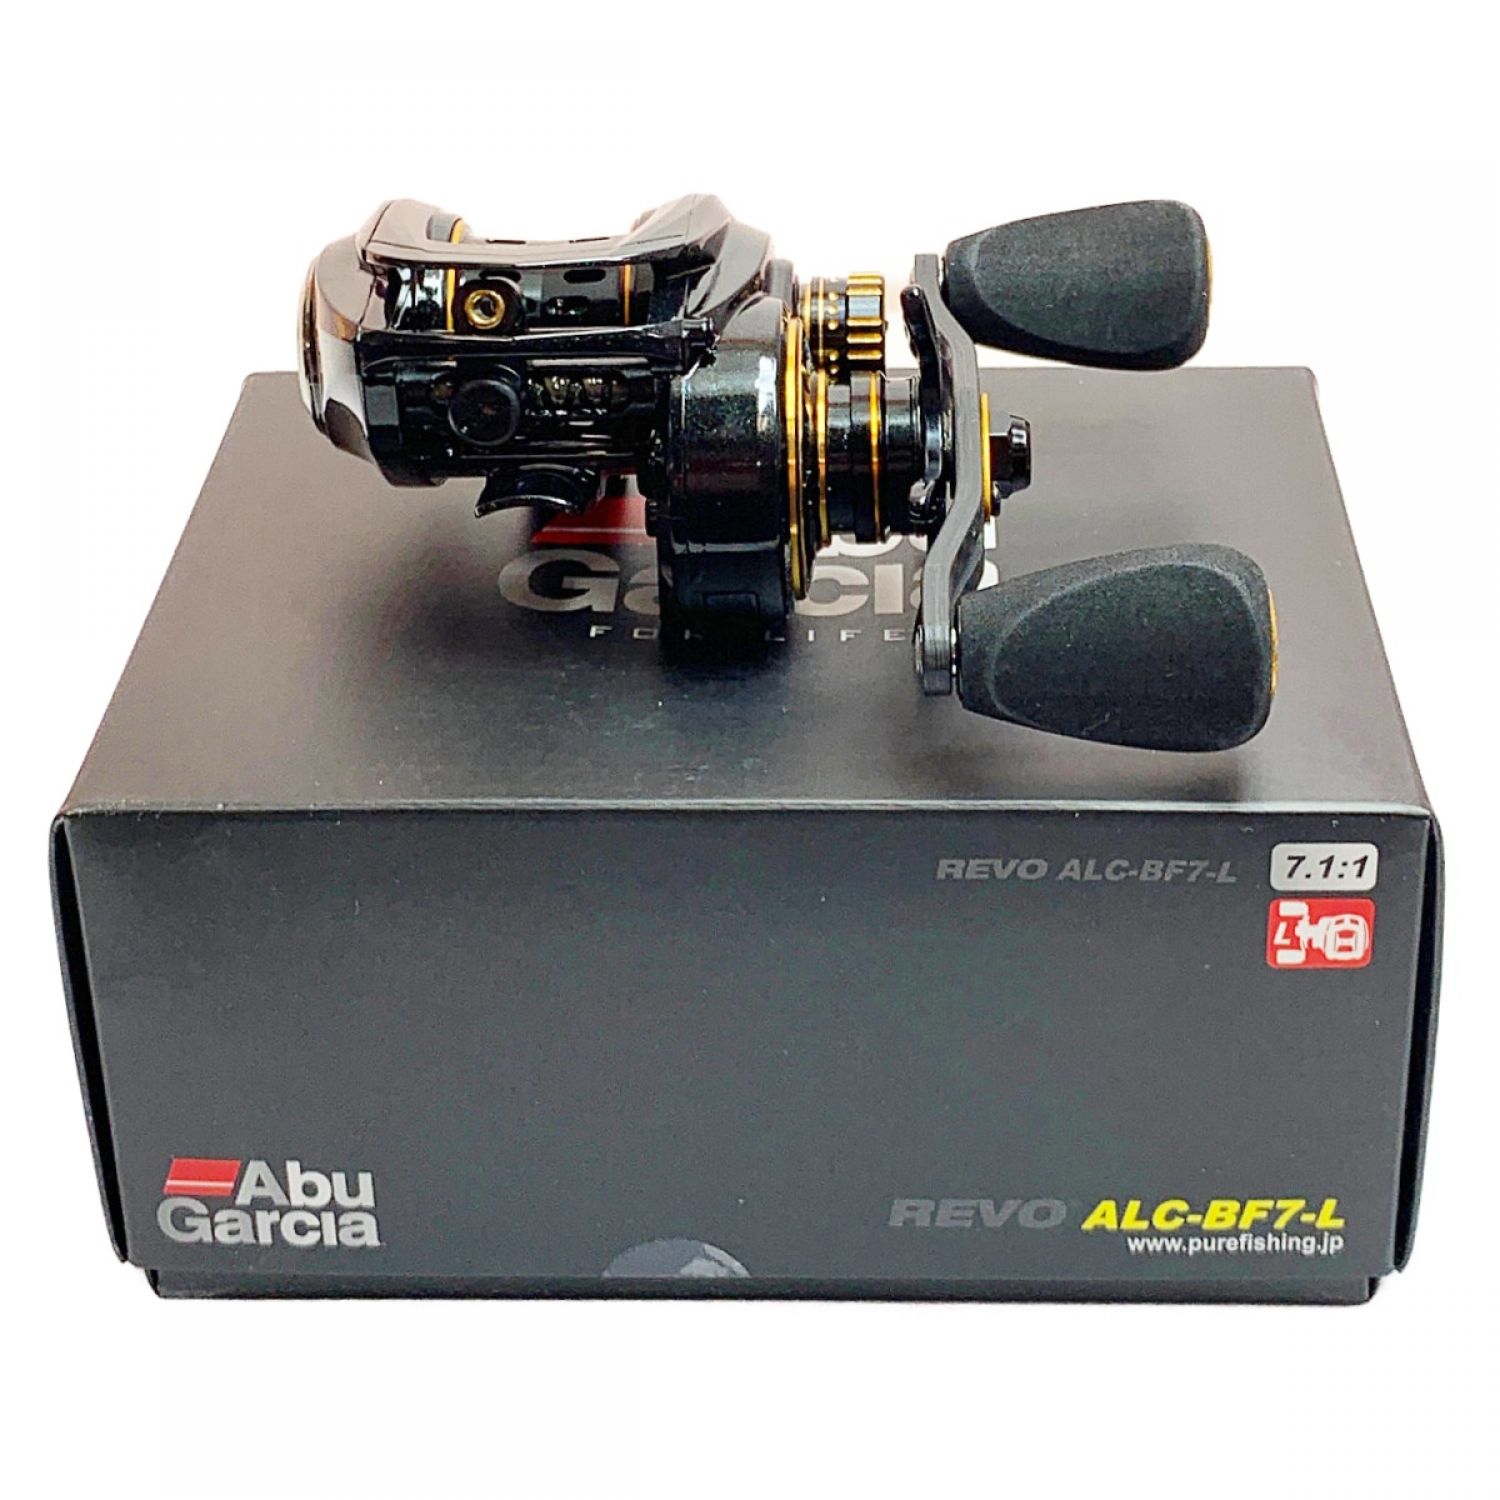 アブガルシア(Abu Garcia) REVO ALC BF7 新品・未使用 - リール